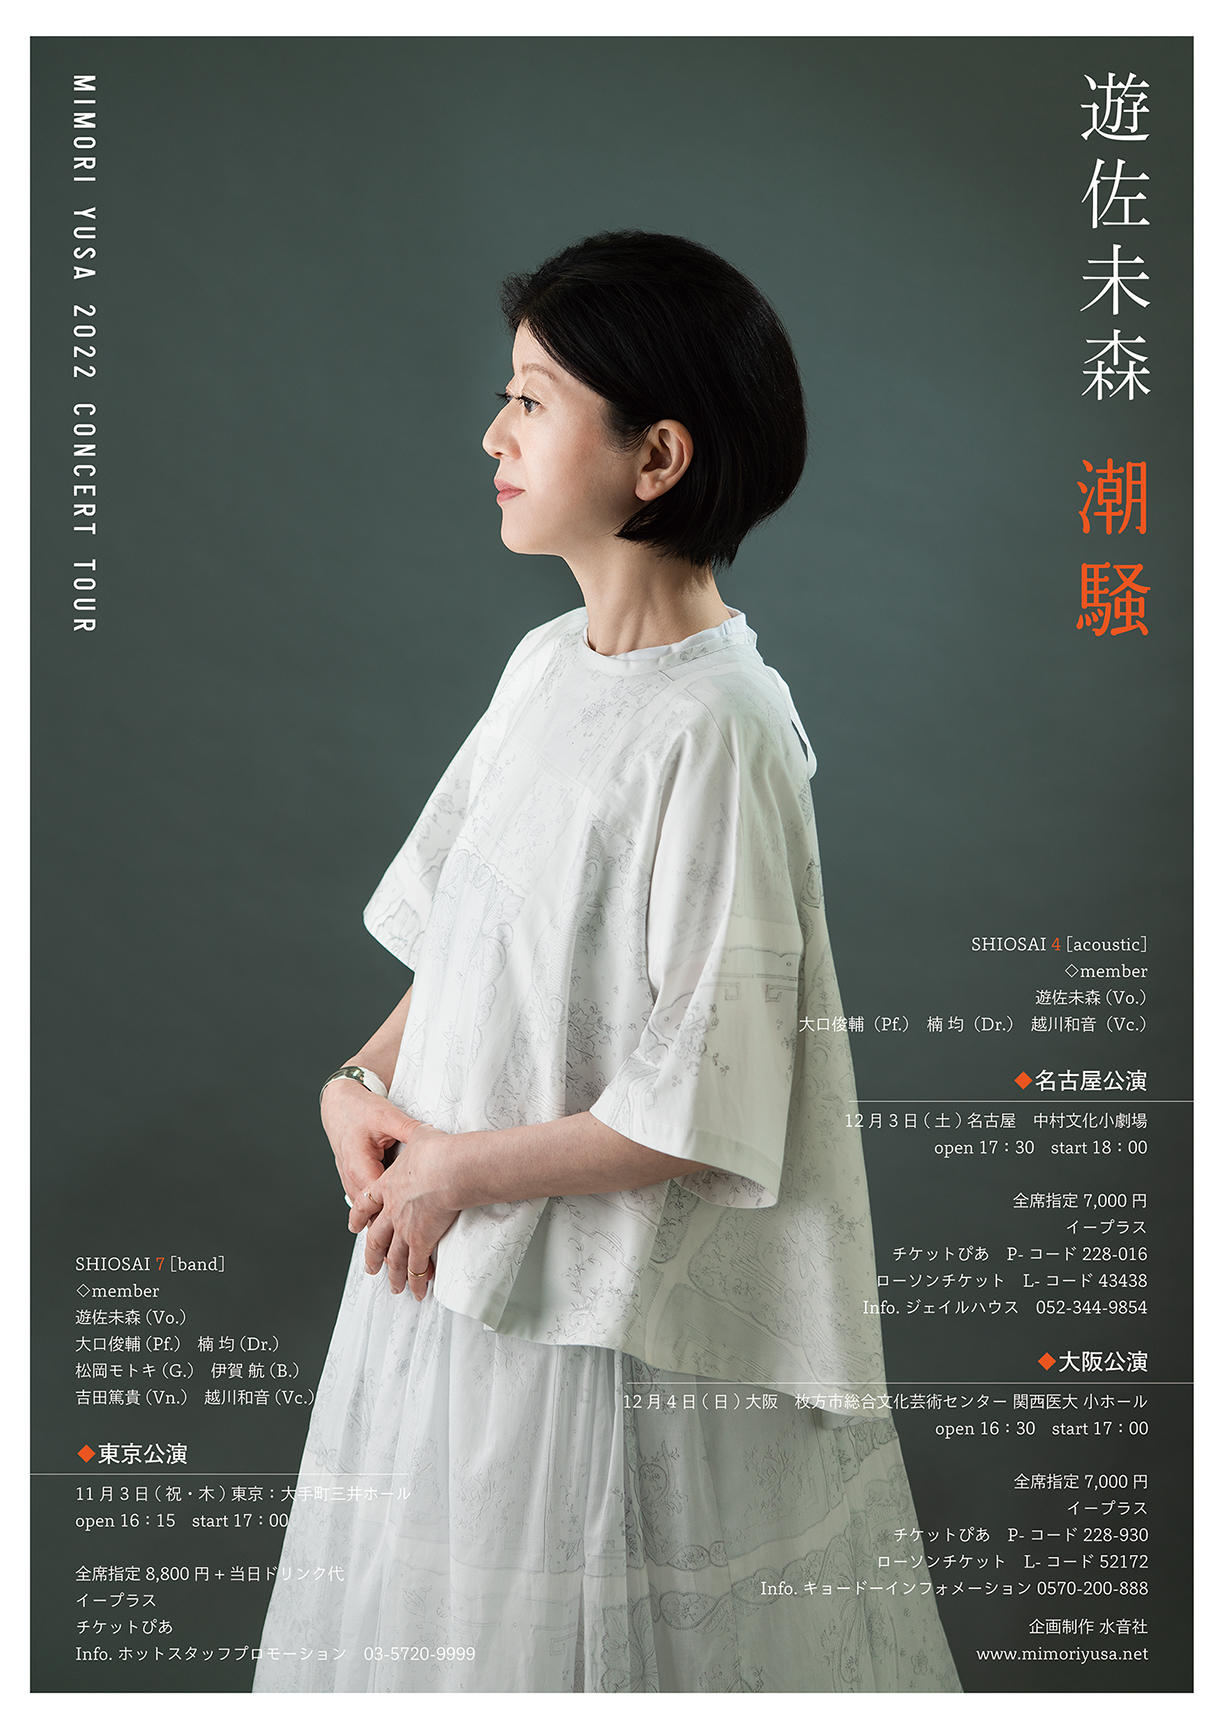 遊佐未森 Mimori Yusa Concert Tour 2022 『潮騒』 SHIOSAI 4 (acoustic)